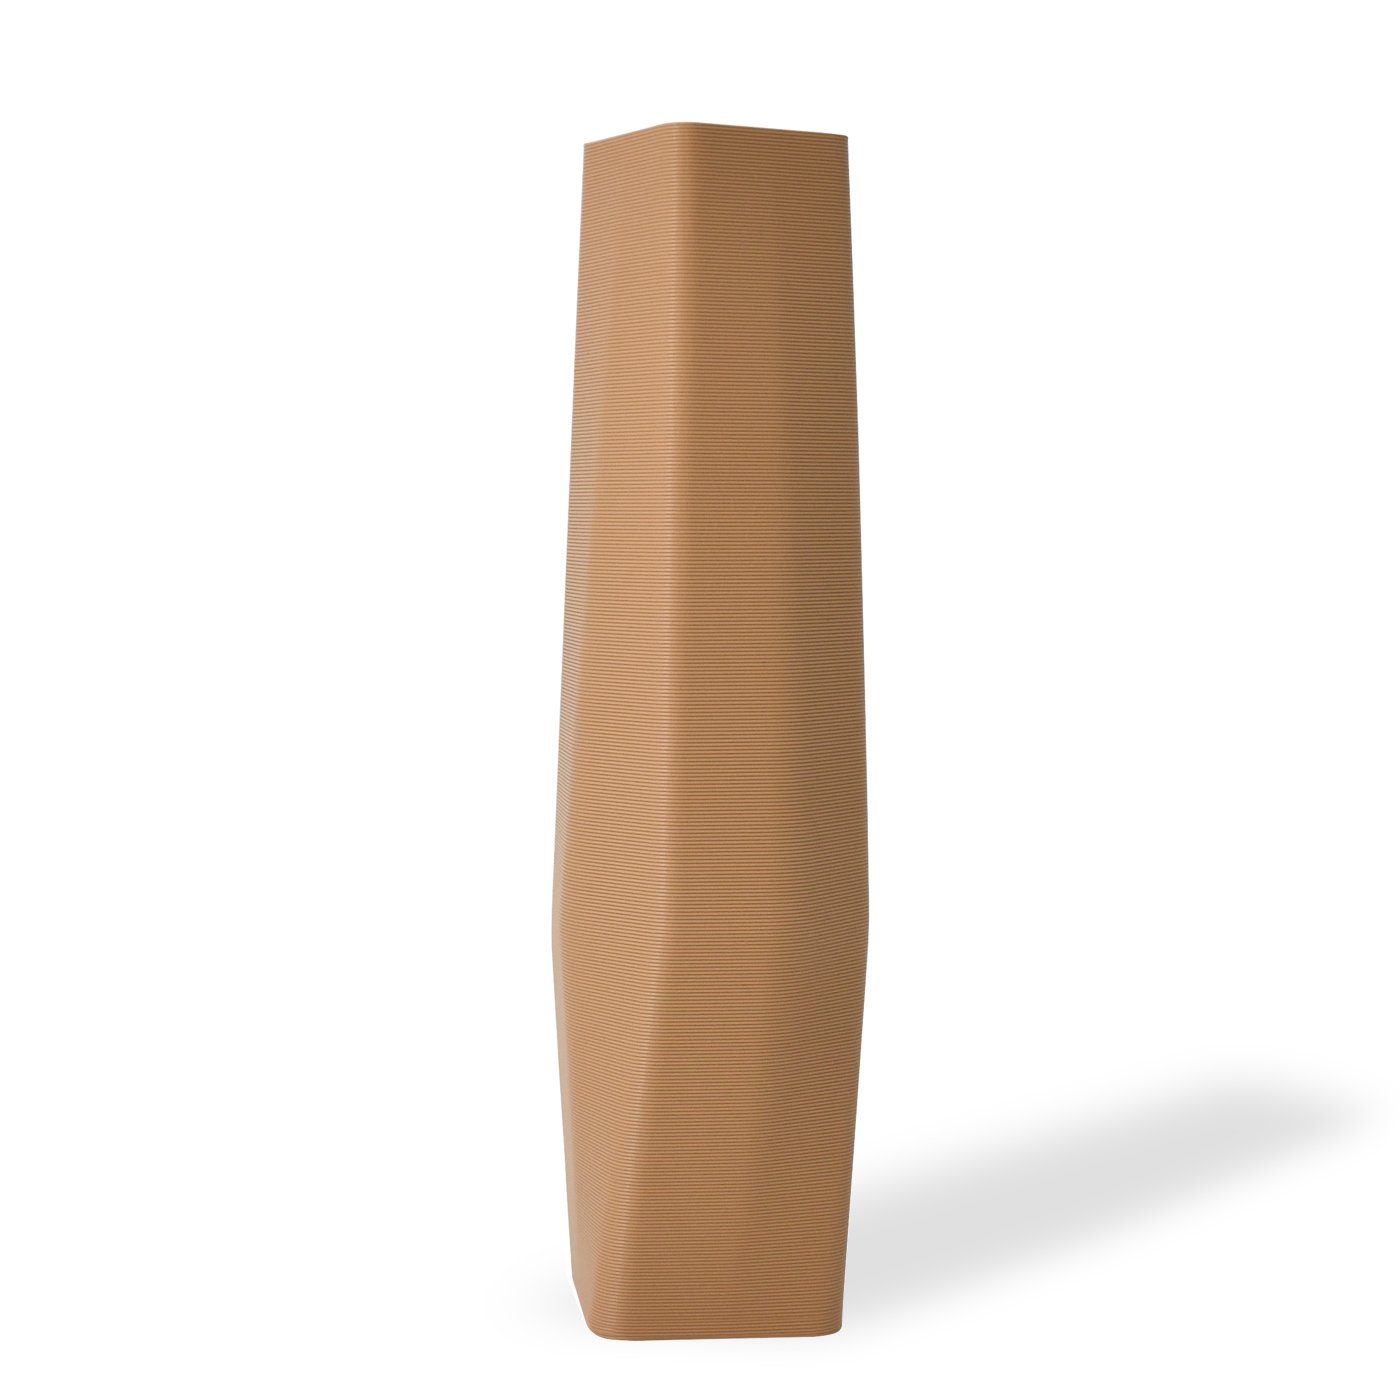 Shapes - Decorations Dekovase the vase - square (basic), 3D Vasen, viele Farben, 100% 3D-Druck (Einzelmodell, 1 Vase), Wasserdicht; Leichte Struktur innerhalb des Materials (Rillung) Erdnussbraun